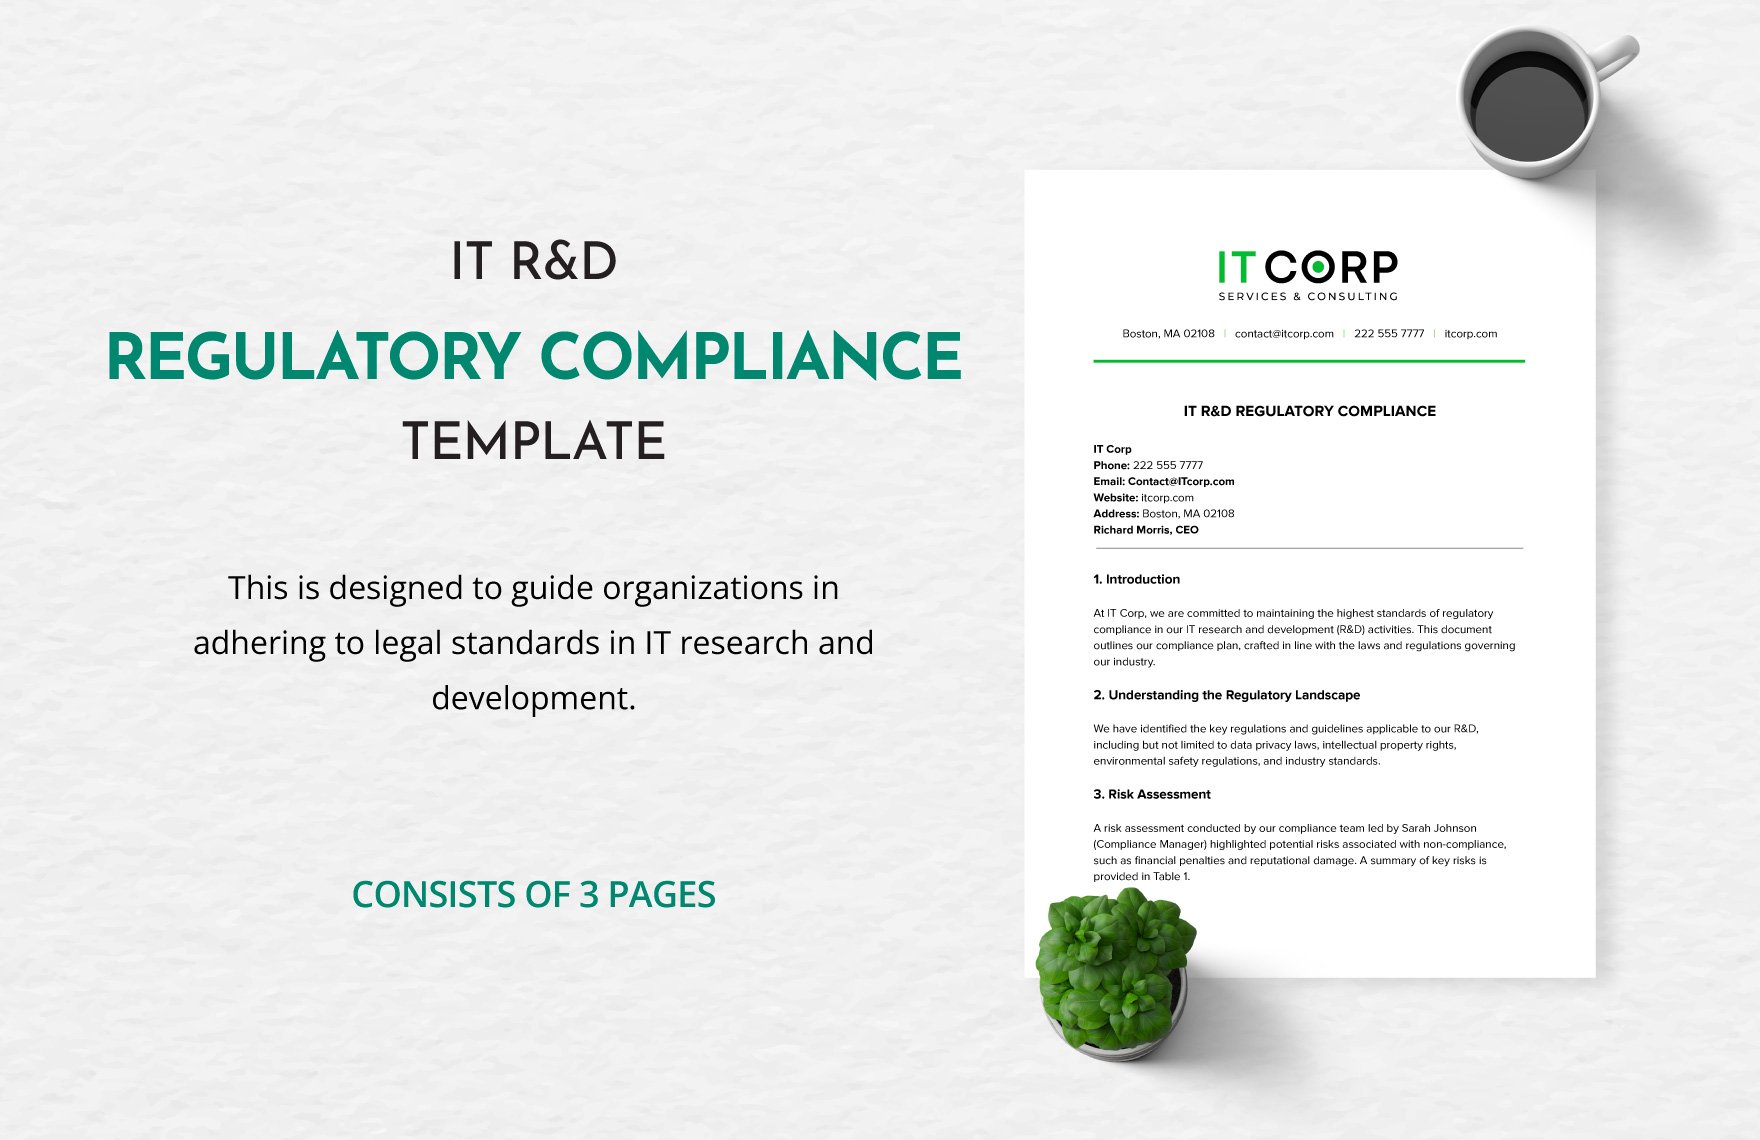 IT R&D Regulatory Compliance Template